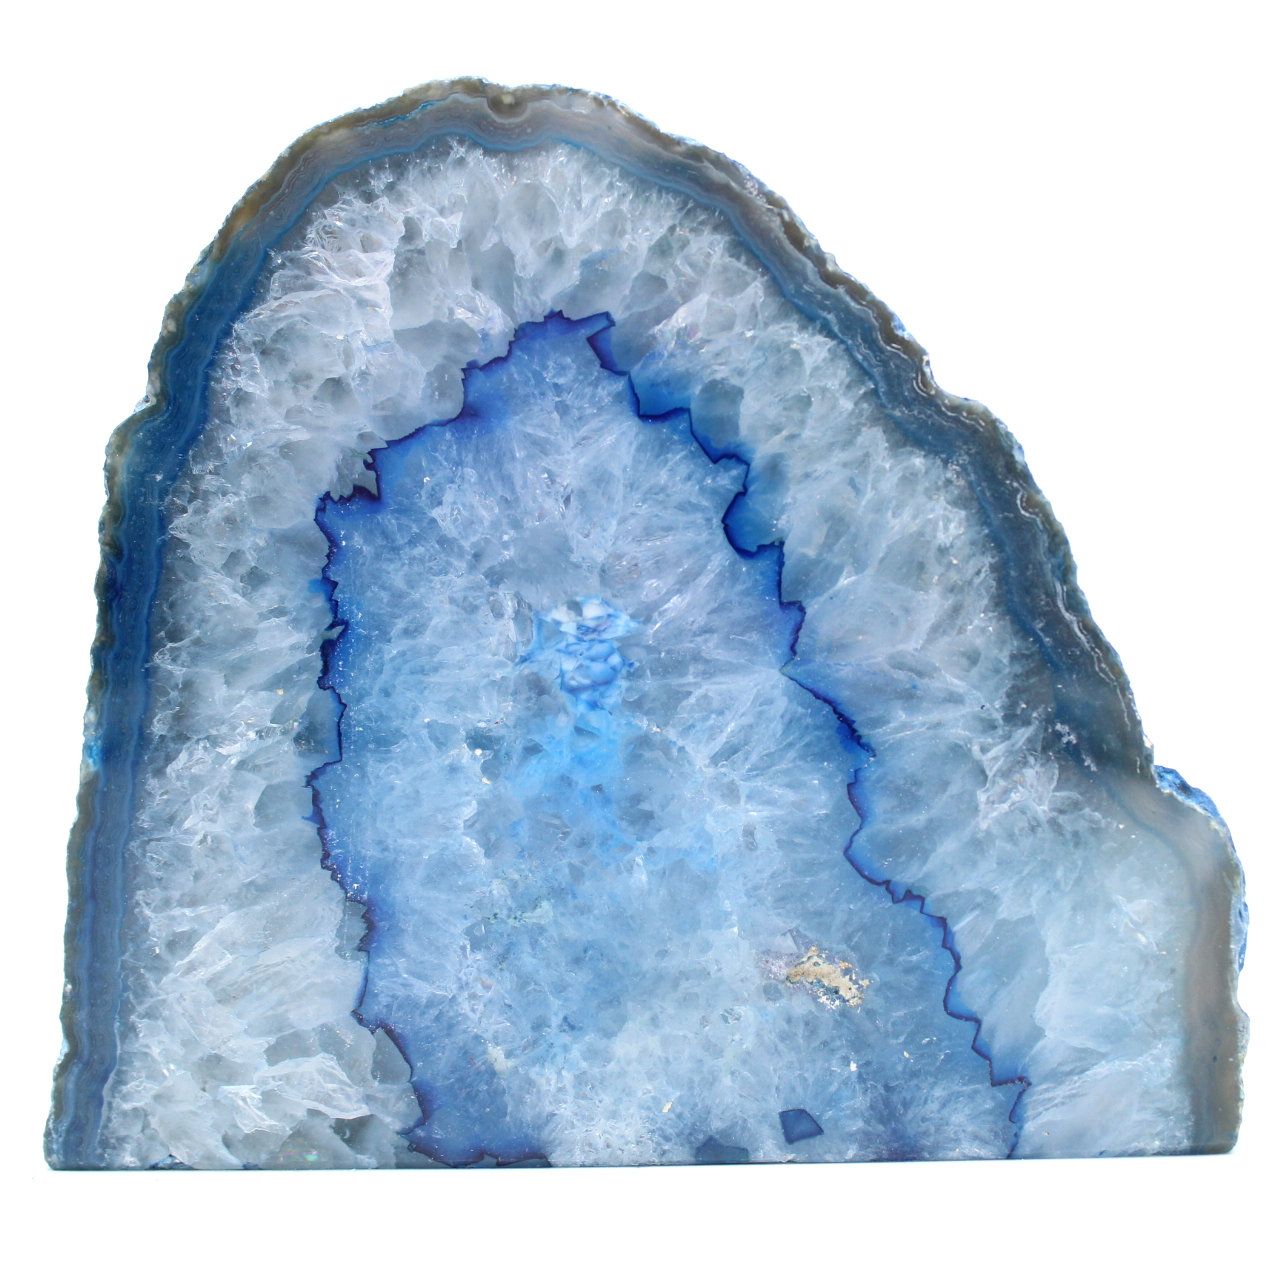 Decorative blue agate